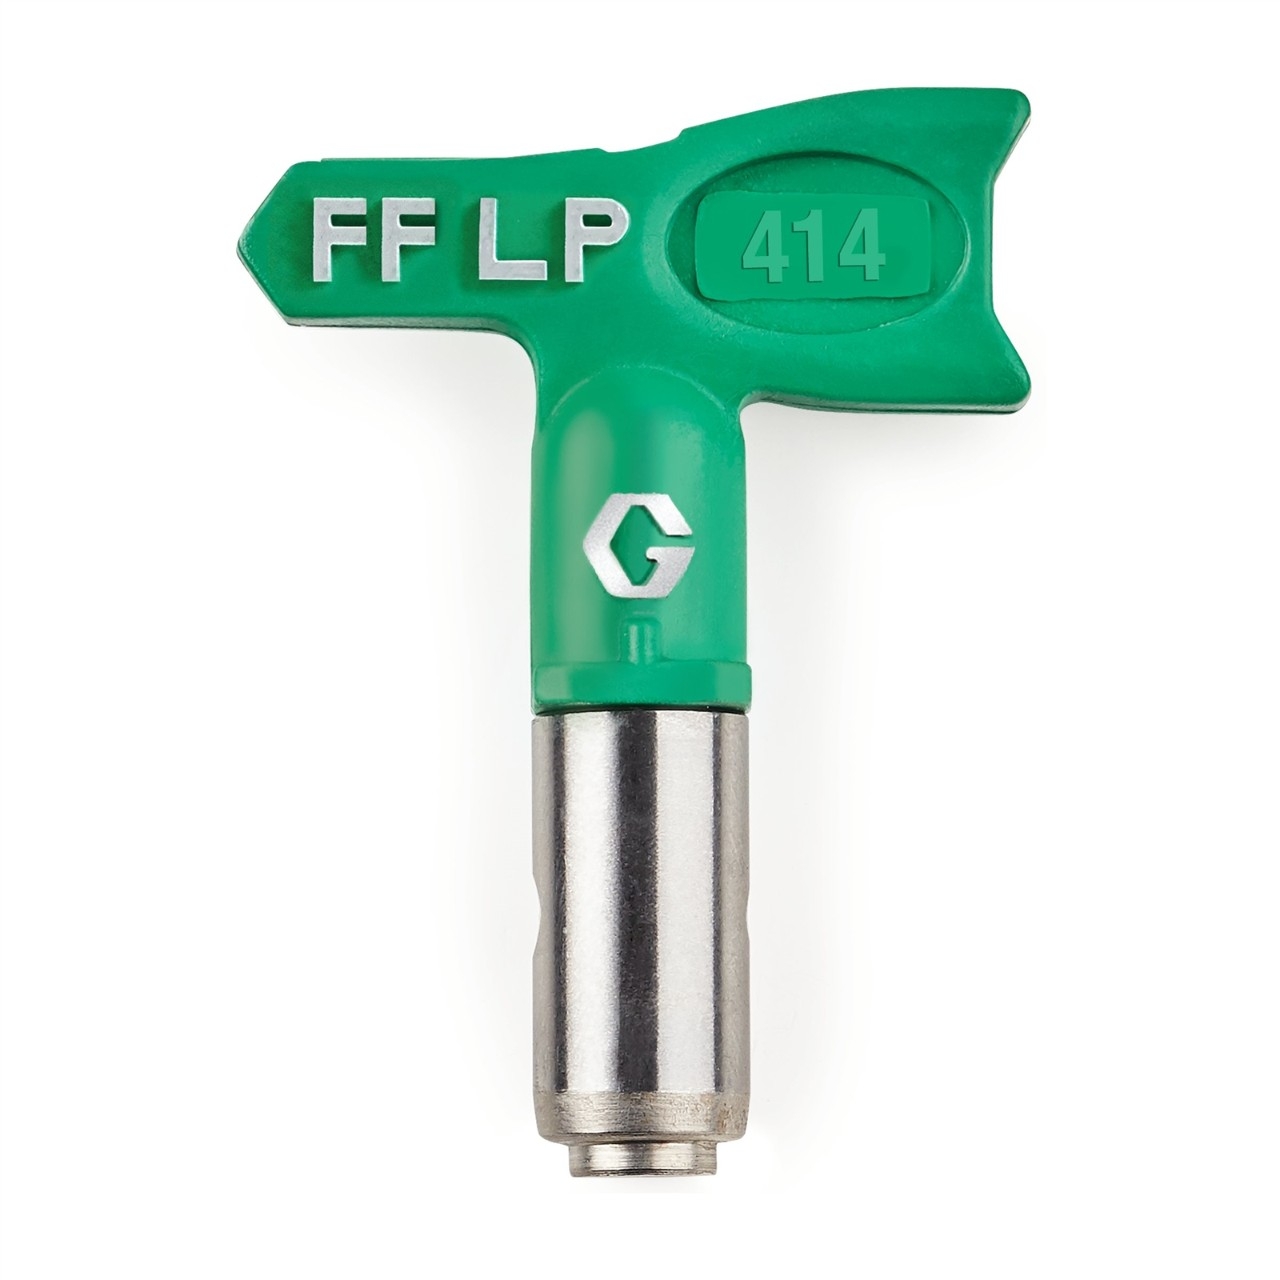  FFLP414 - Duză FFLP SwitchTip 414, pentru finisaj fin la presiune scăzută, compatibilă cu RAC X